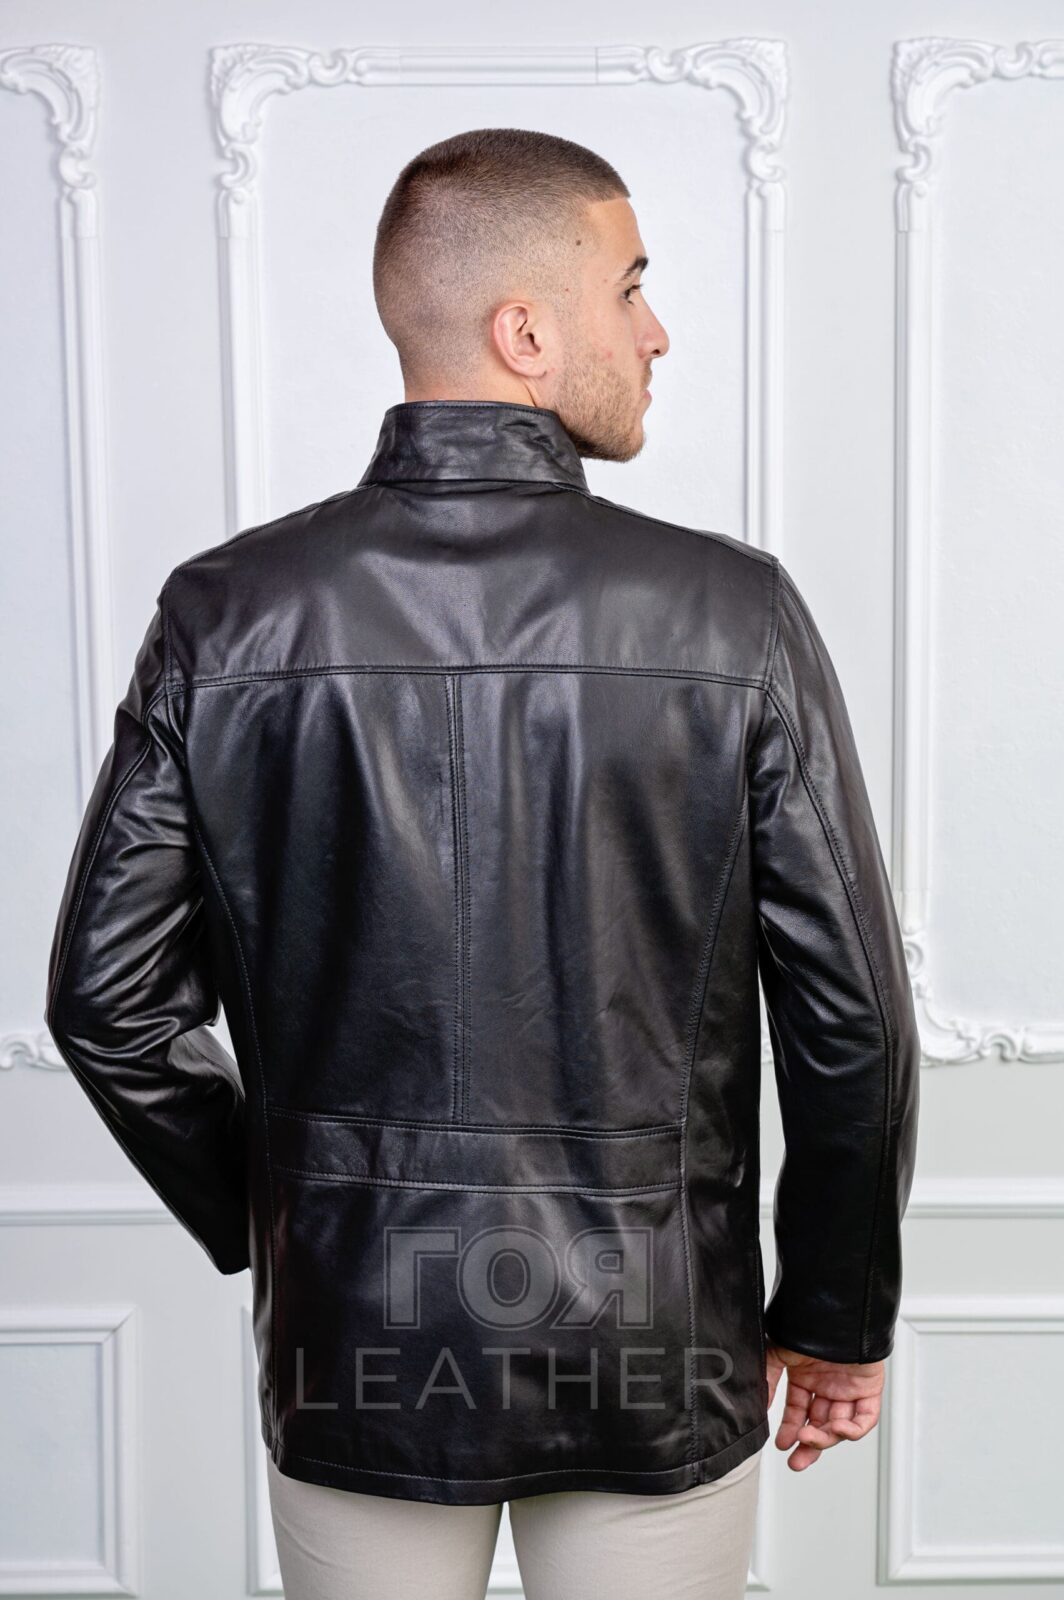 Мъжко удължено кожено яке от ГОЯ Leather. 100% естествена кожа. Нов модел удължено кожено яке. Елегантно мъжко яке.